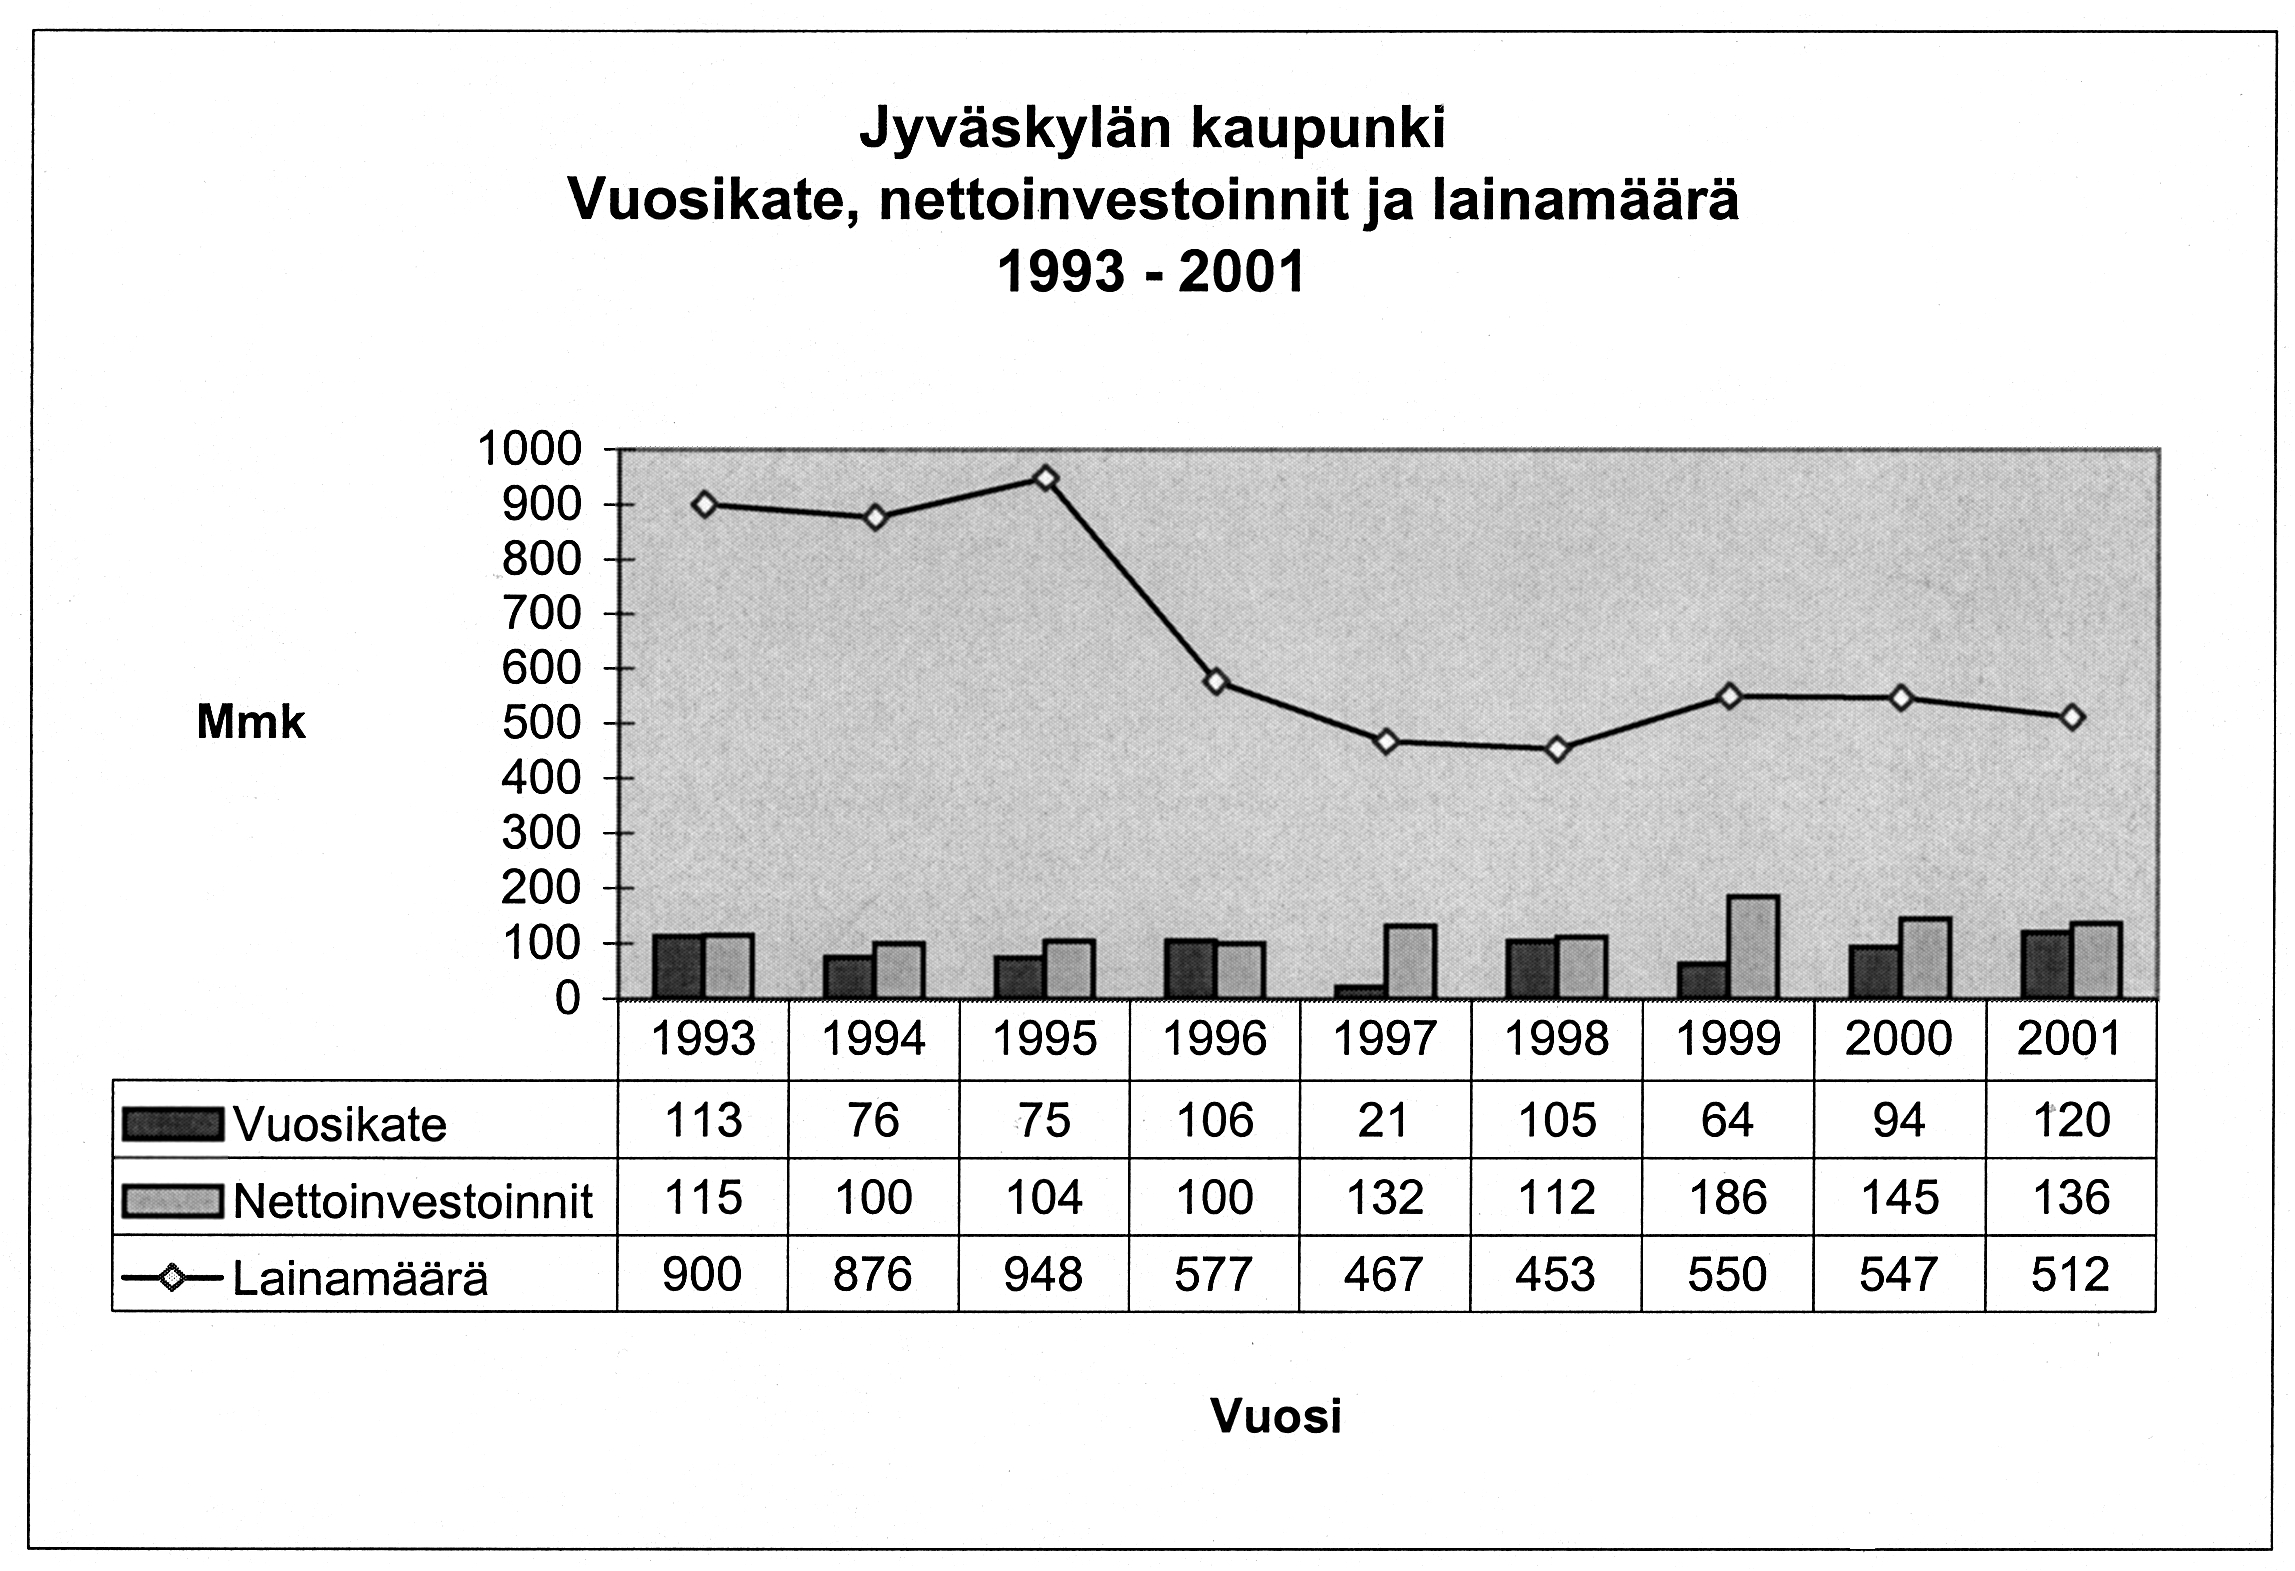 LIITE 5a Jyväskylän maalaiskunnan tuloslaskelma 1997 ja 1998 1997 1998 Mmk Mmk Toimintatuotot 67,0 73,4 Myyntituotot Maksutuotot Tuet ja avustukset Muut tuotot Toimintakulut 485,6 496,9